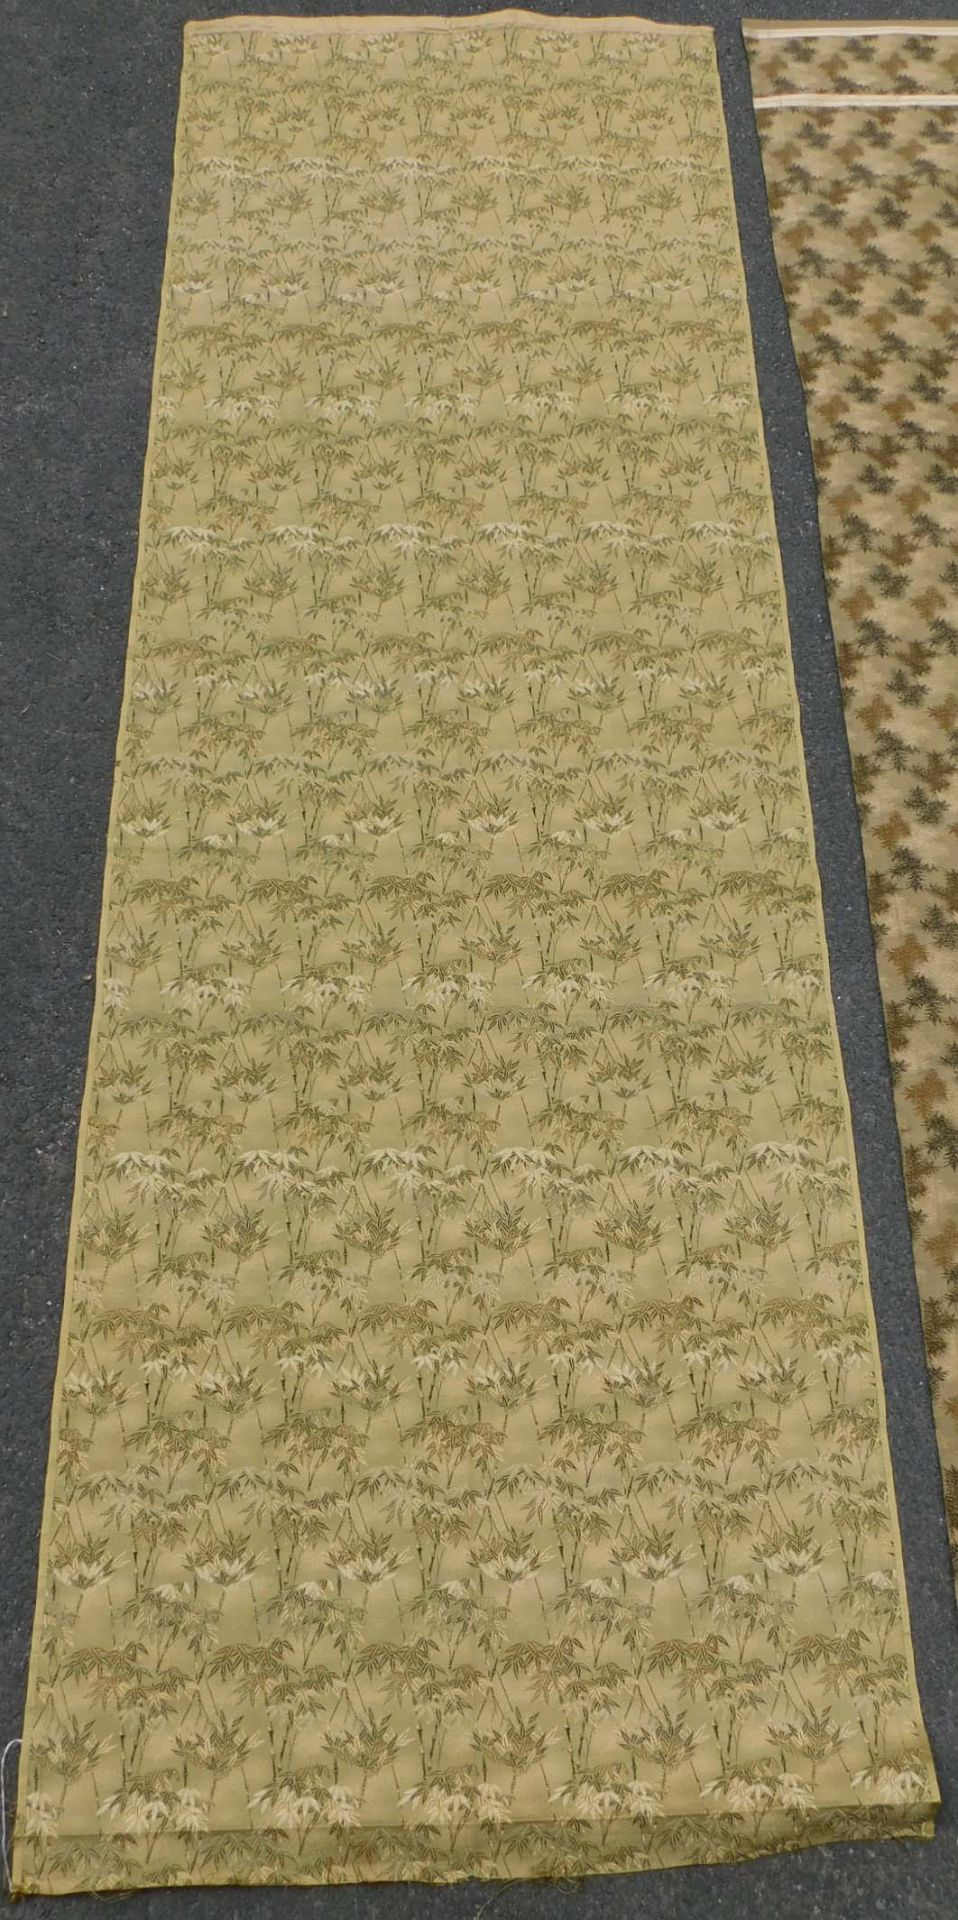 5 Obi Textilien Japan. Wohl alt, teils Seide, gewebt.Bis 205,5 cm x 65 cm.5 Obi Textiles Japan. - Image 5 of 12